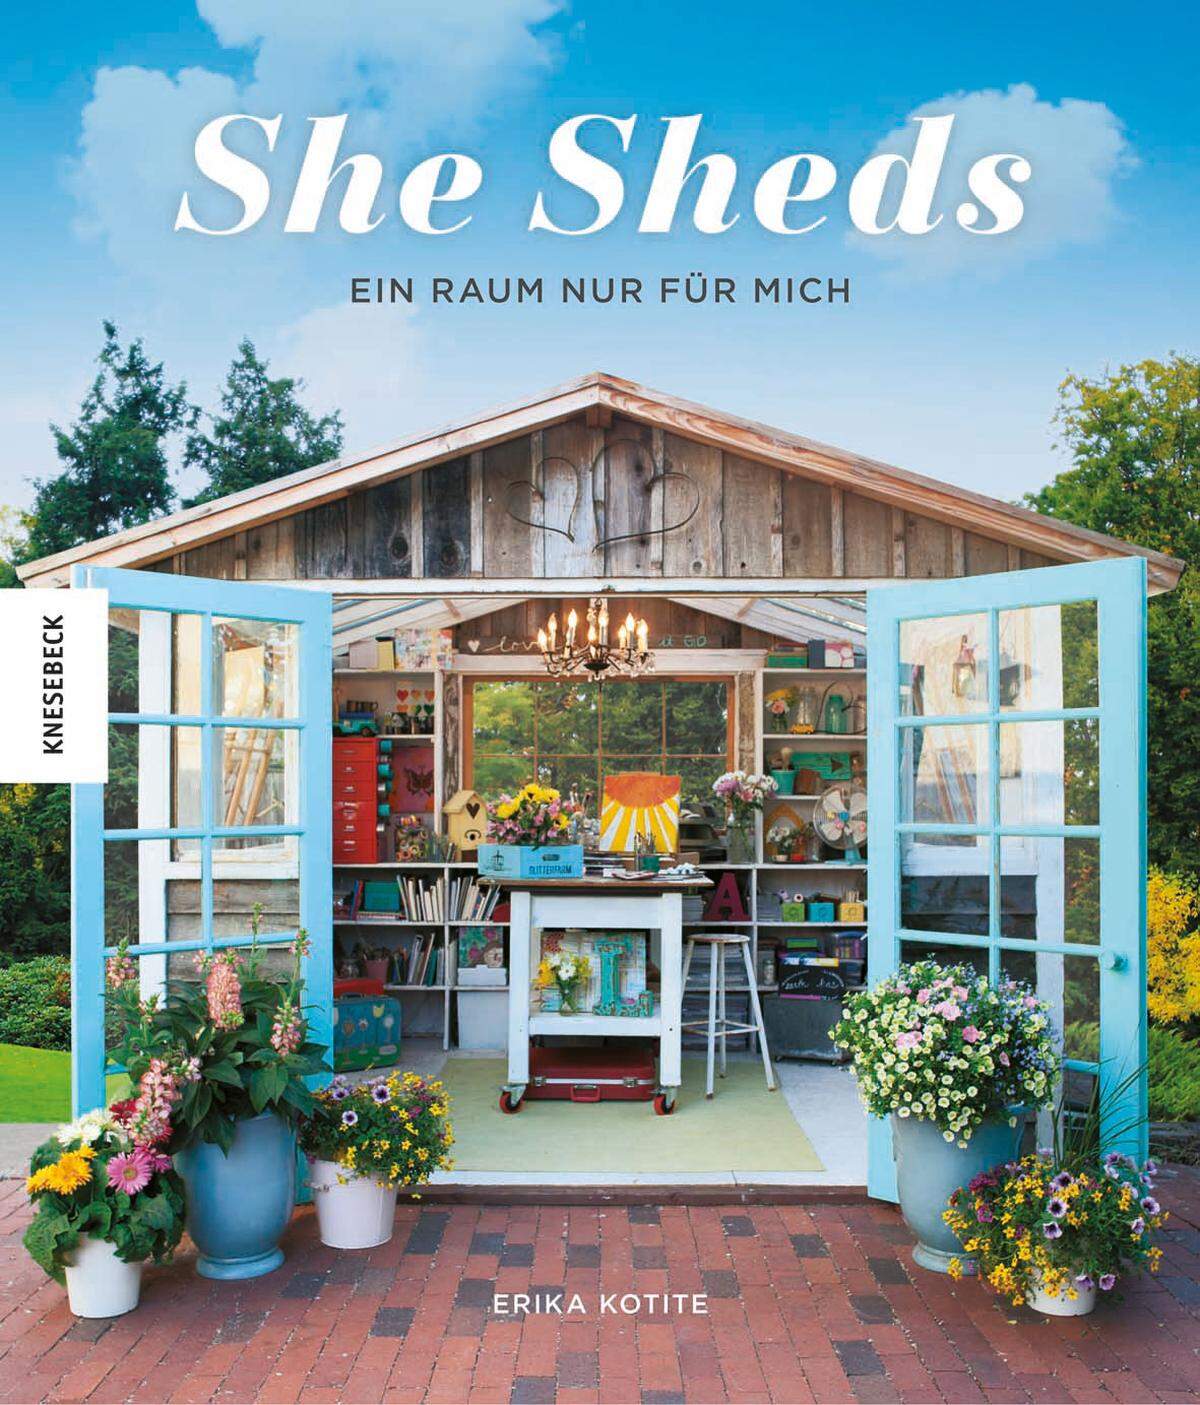 "She Sheds - Ein Raum nur für mich" von Erika Kotite, erschienen im Knesebeck Verlag, 176 Seiten mit 180 farbigen Abbildungen, erhältlich um 22,70 Euro im gut sortierten Buchhandel.